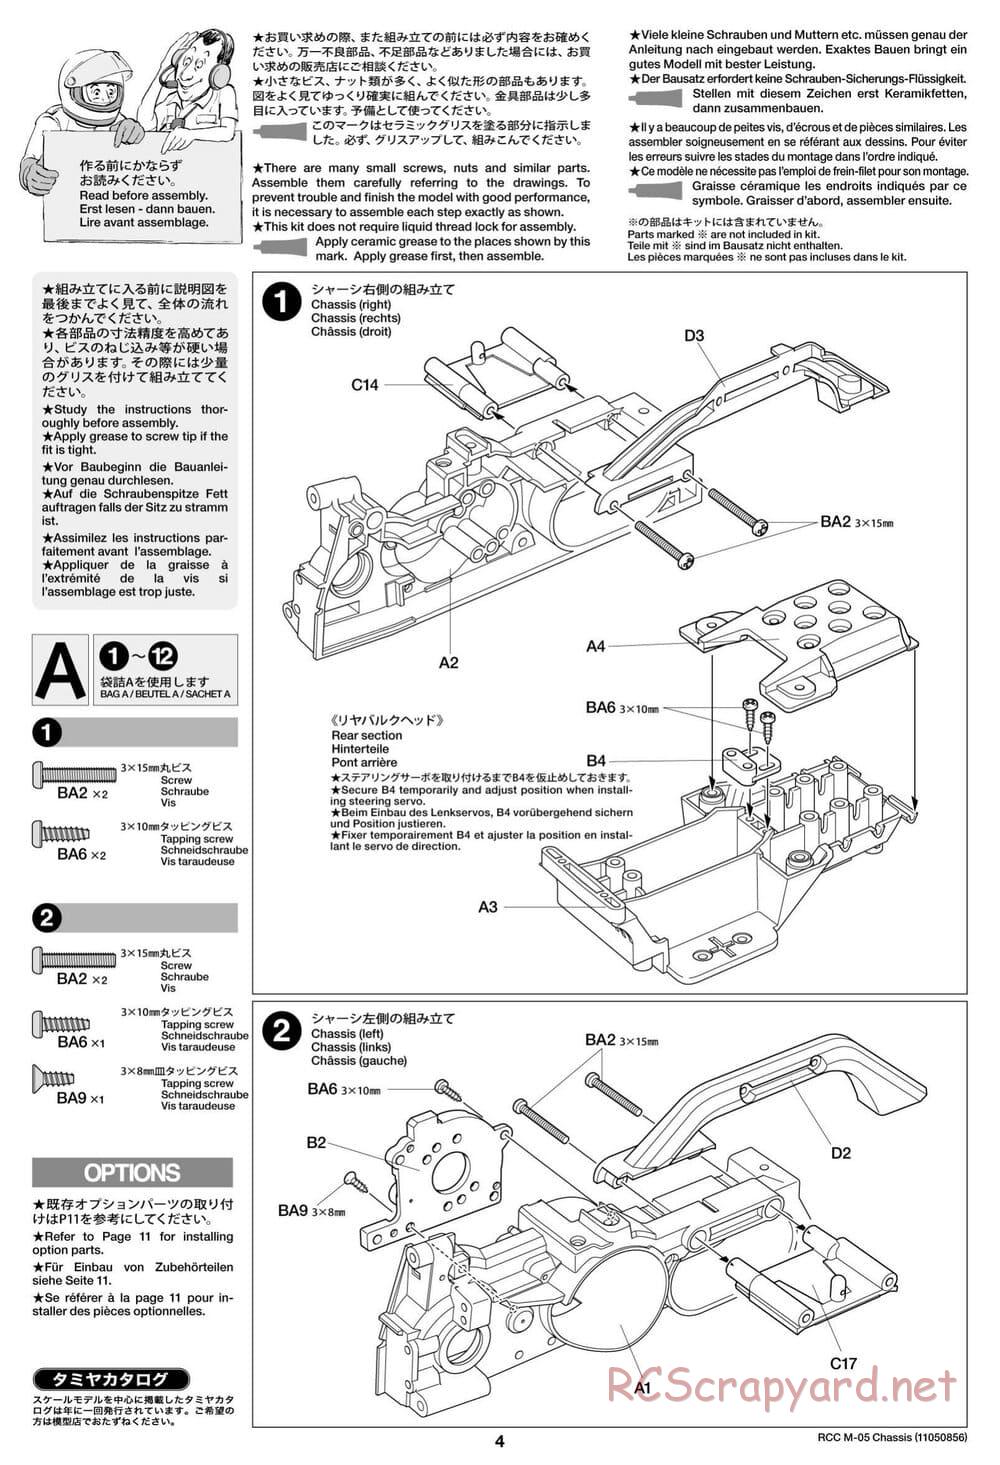 Tamiya - M-05 Chassis - Manual - Page 4